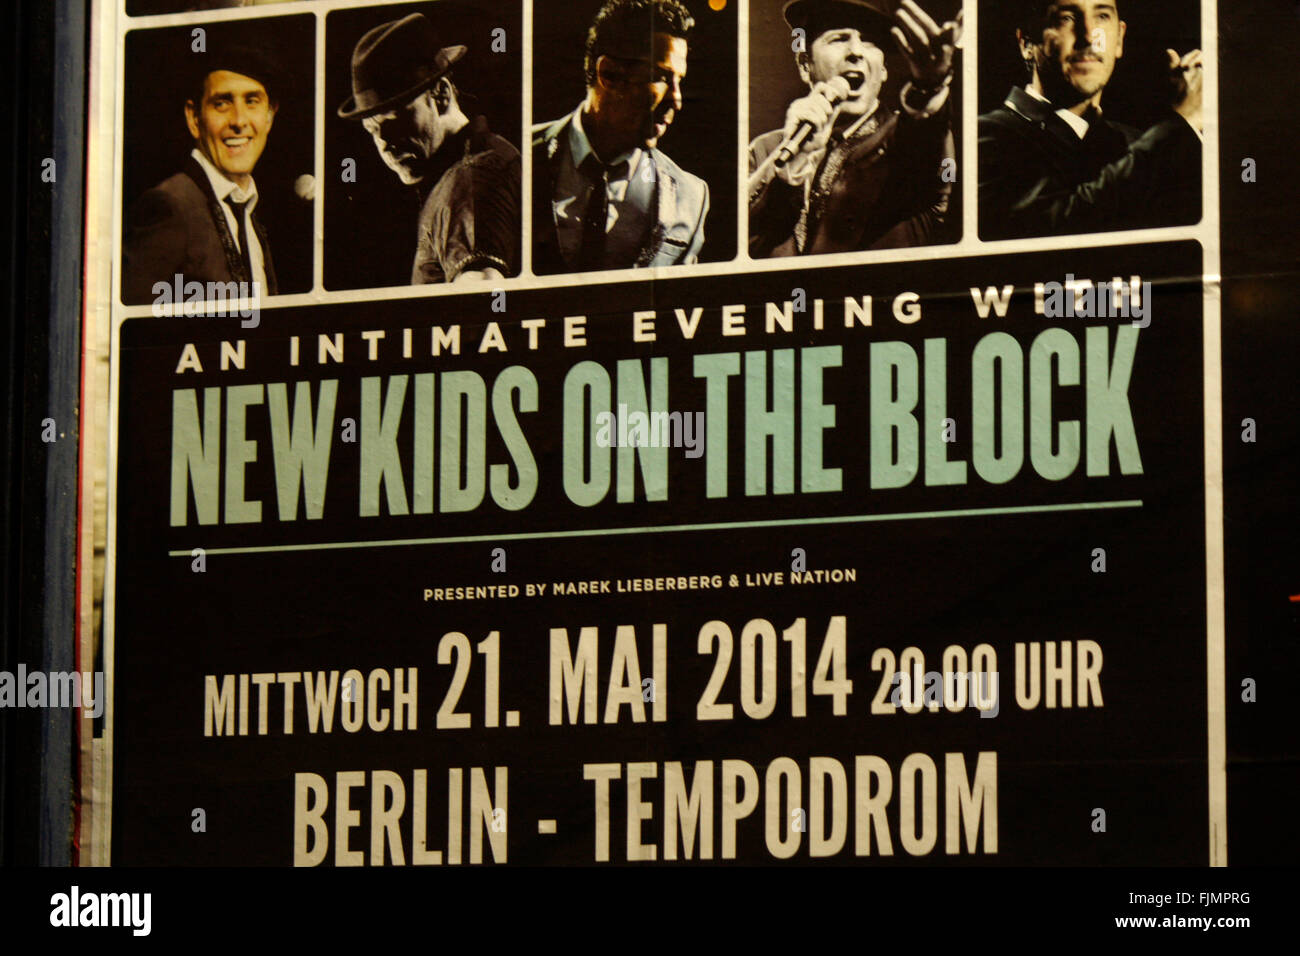 Vorankuendigung Fuer Ein Konzert der Band "New Kids on the Block", Berlin. Stockfoto